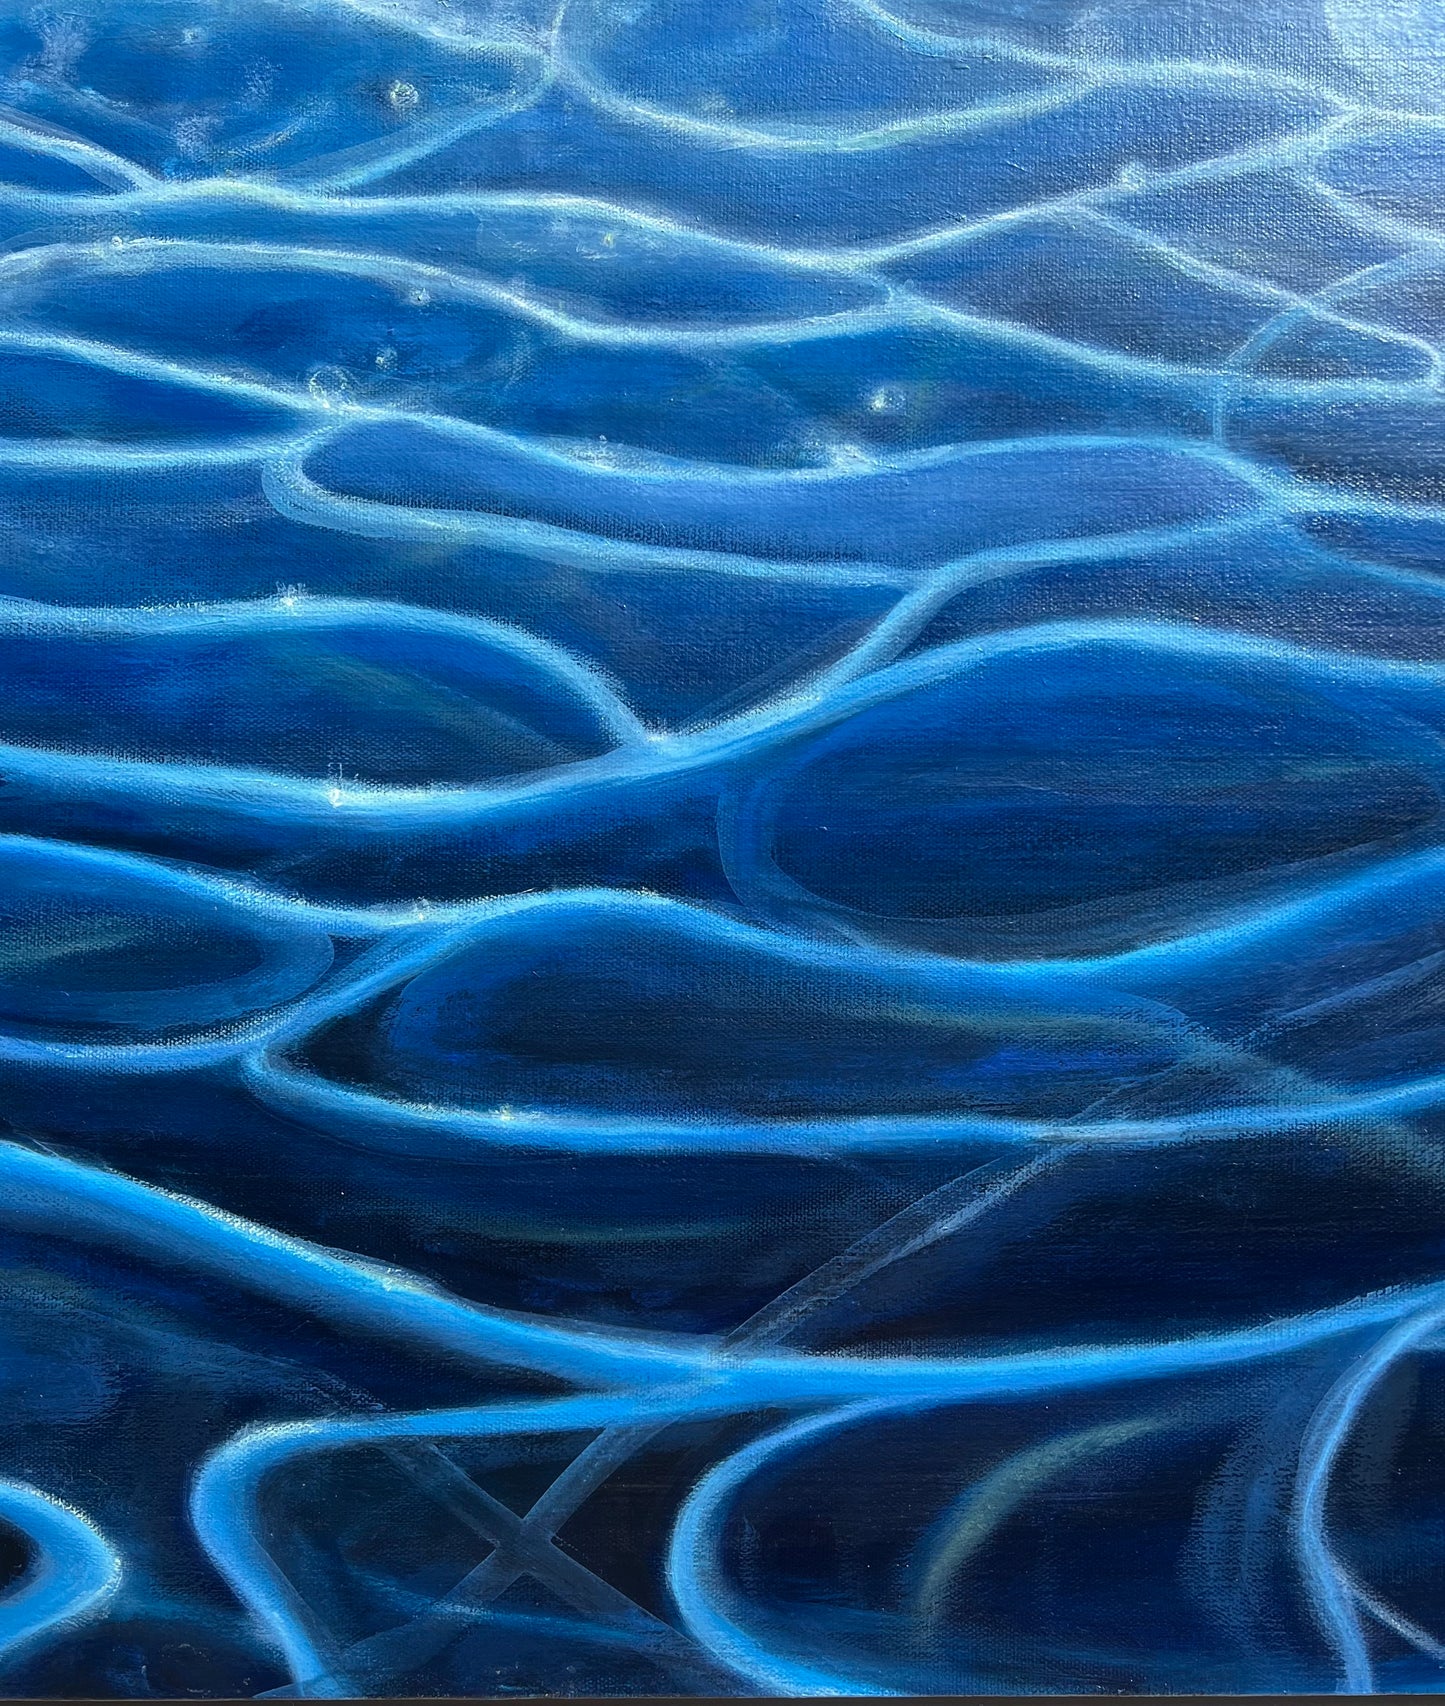 Water- Original Painting by Kirsten Hagen